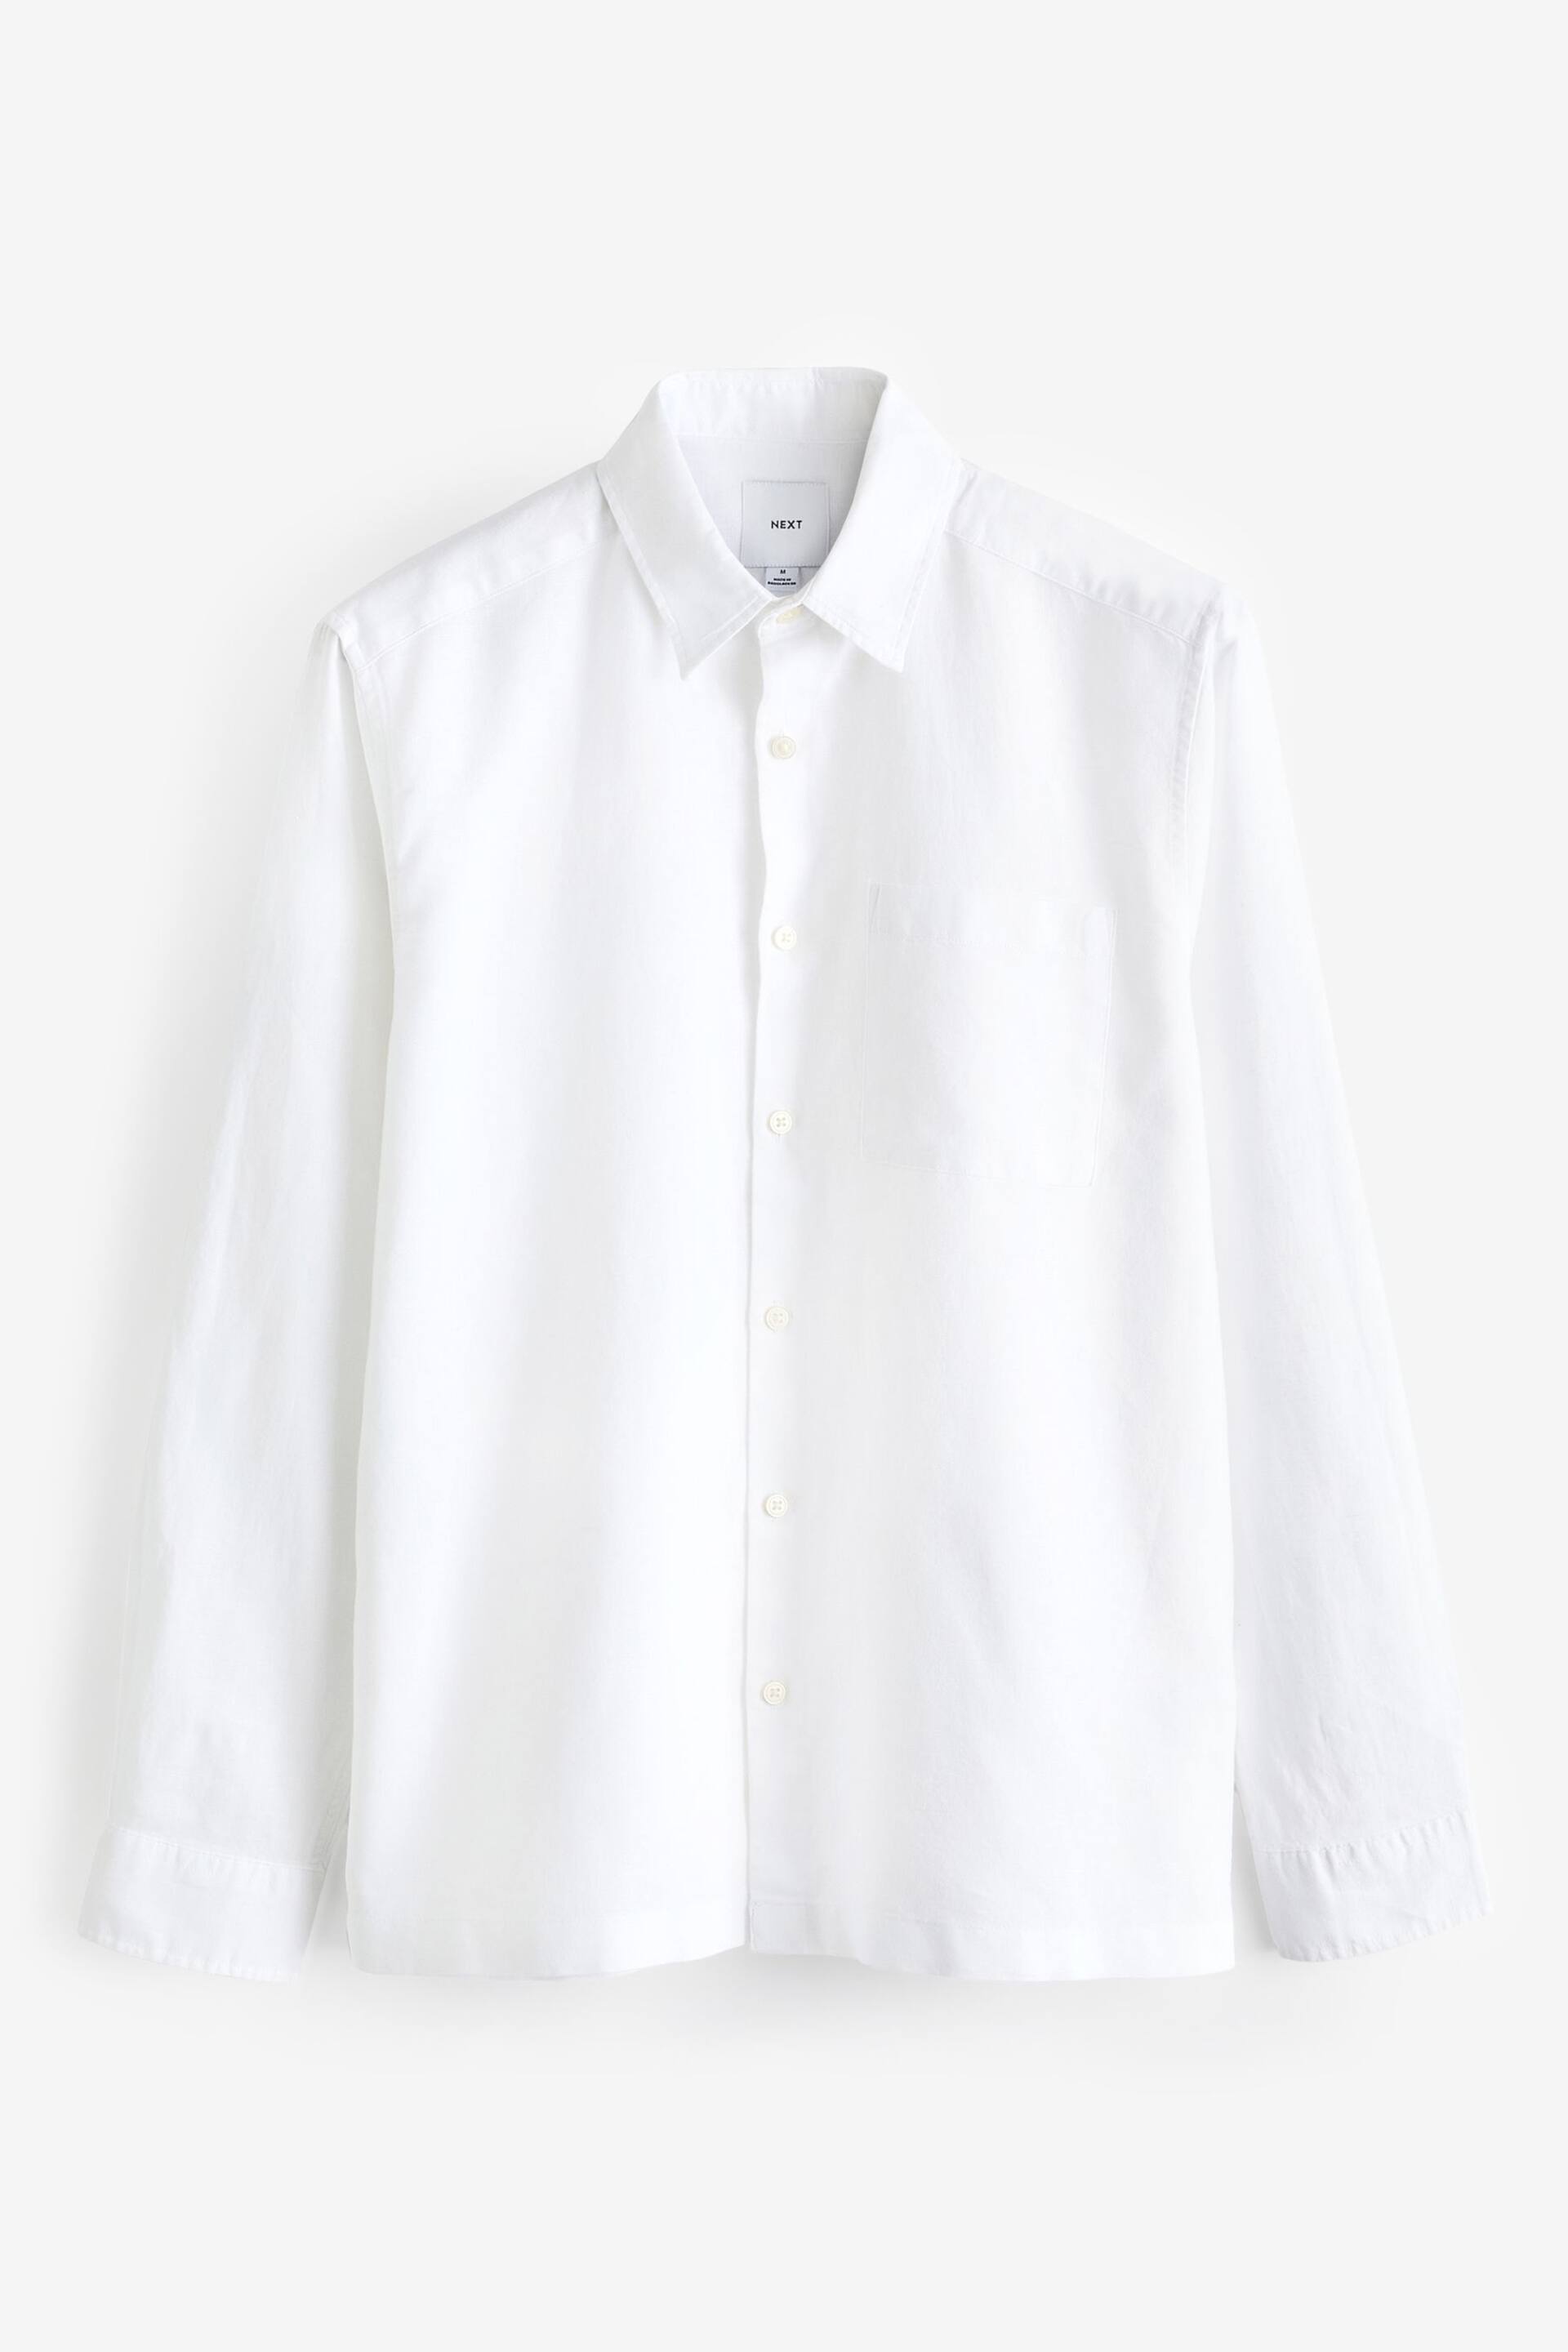 White Linen Blend Long Sleeve Shirt - Image 6 of 8